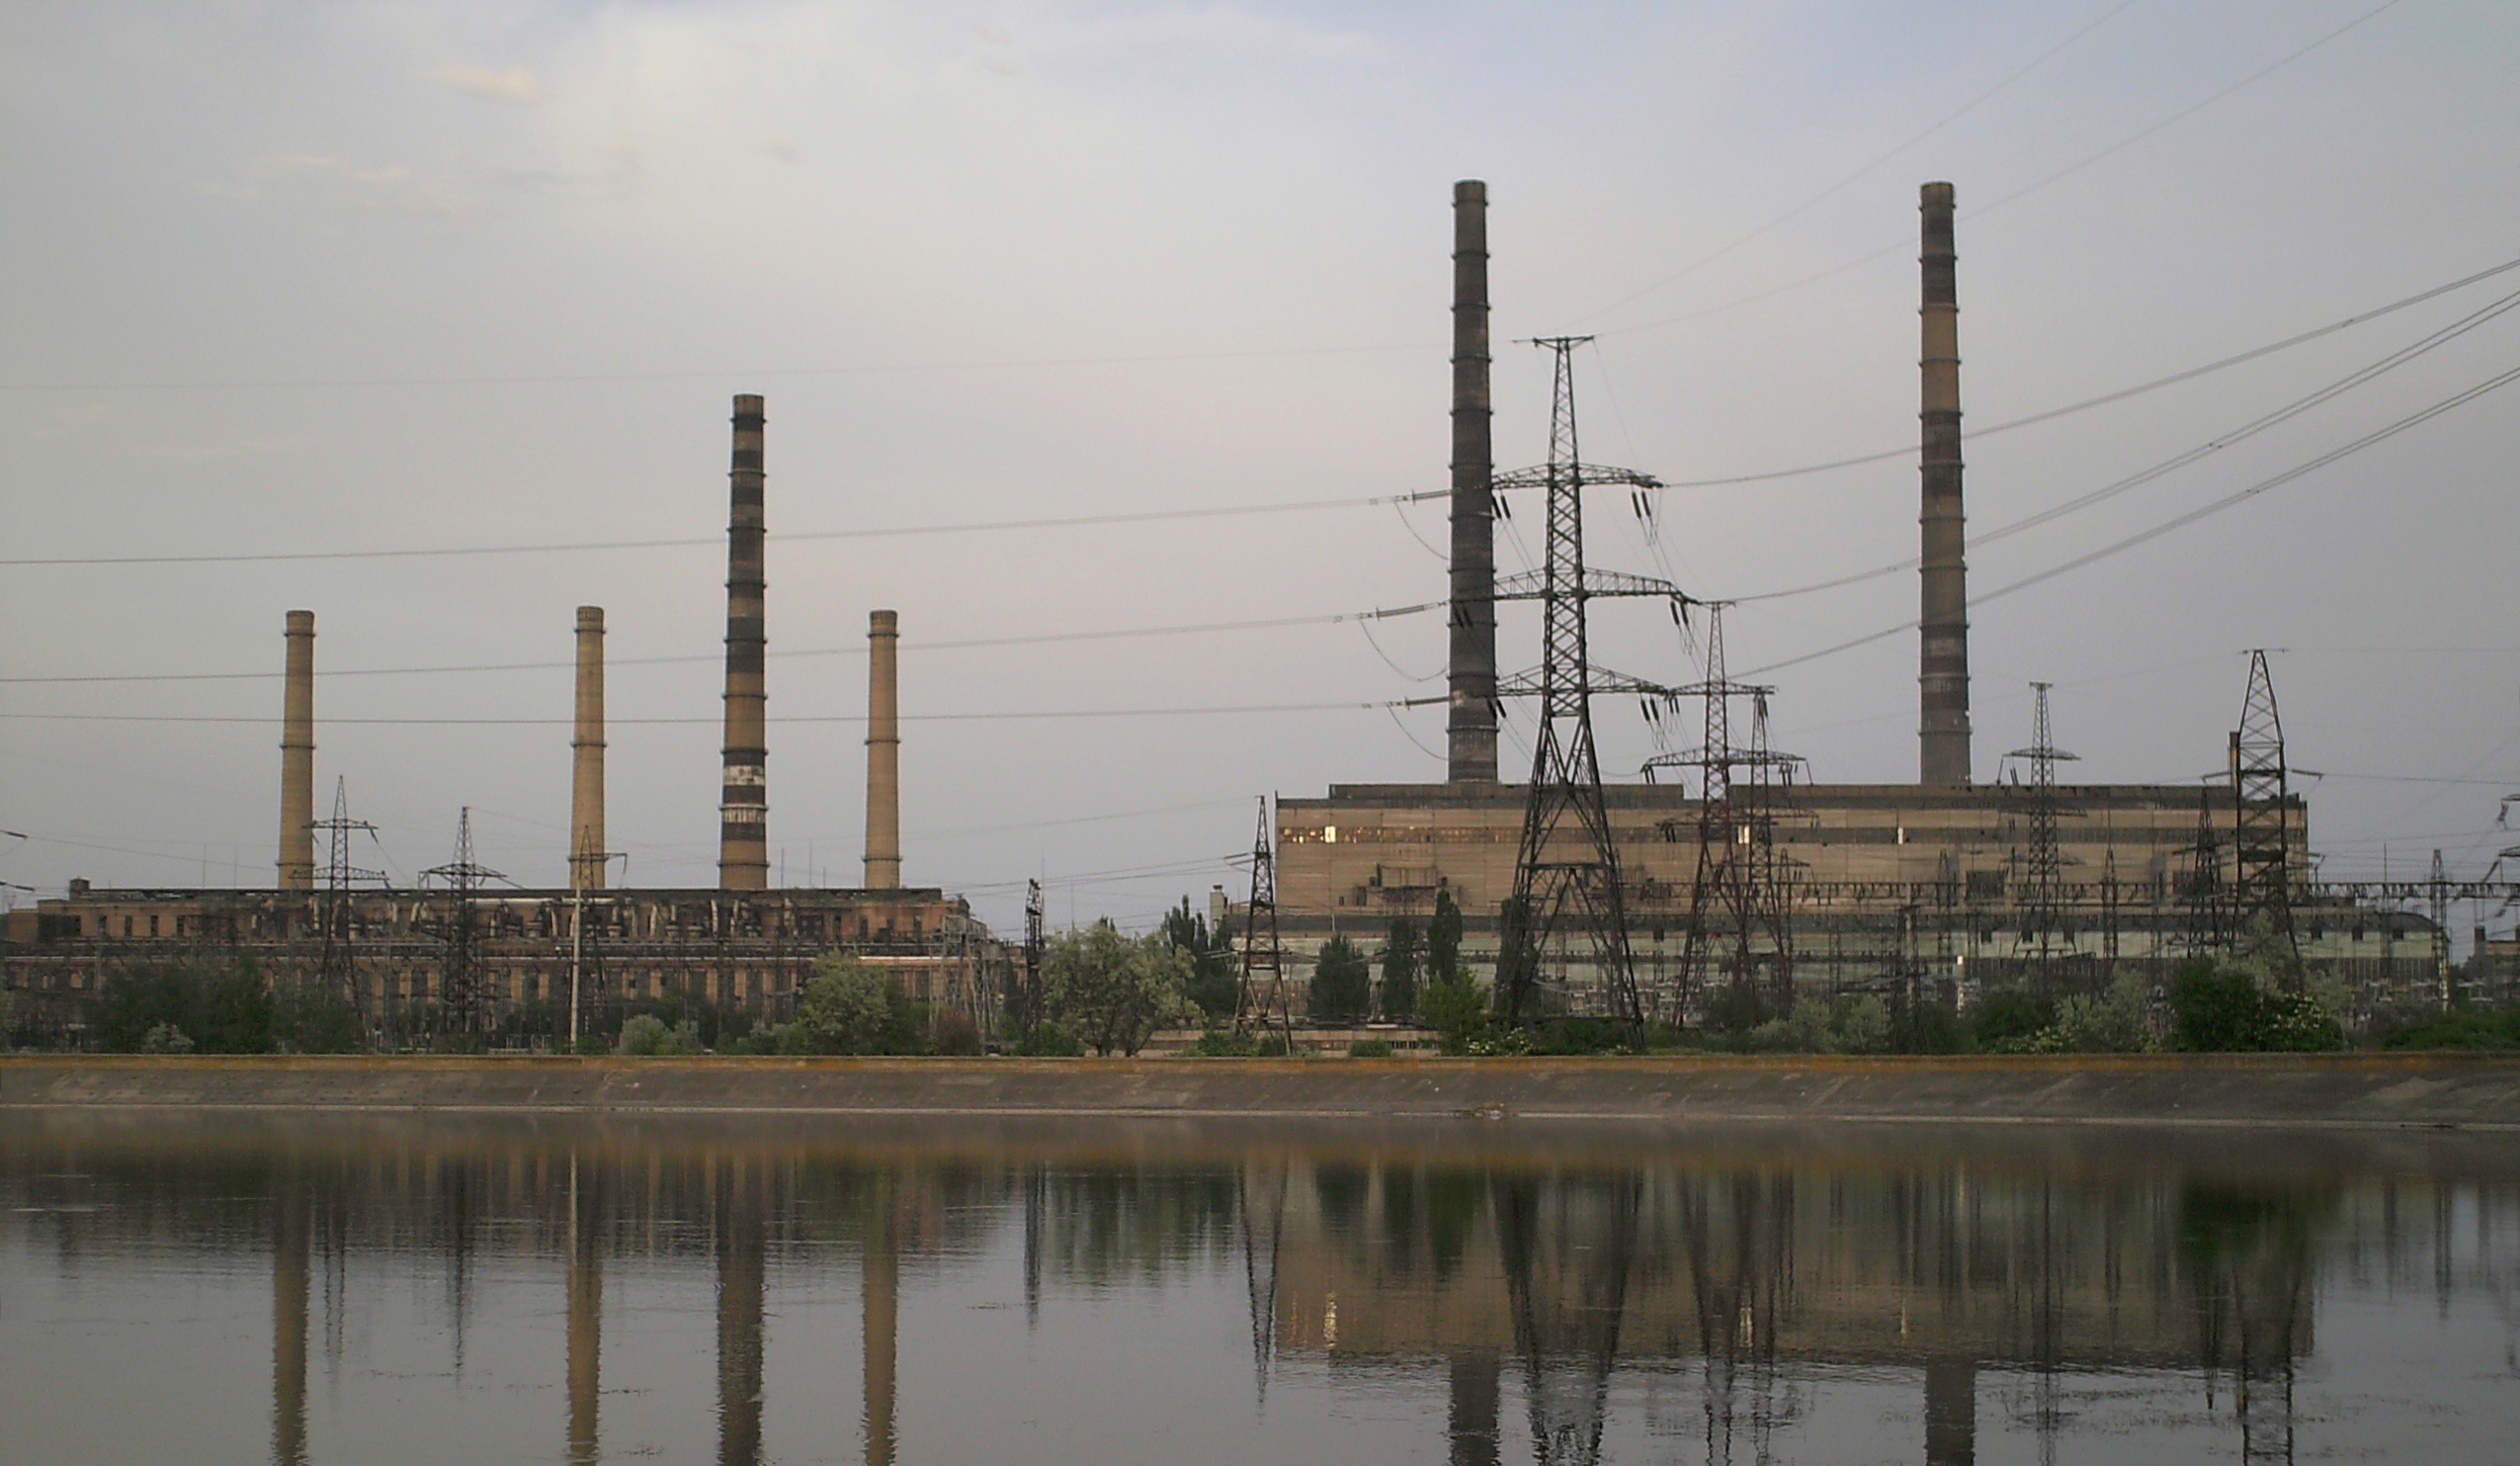 Остановлено 5 из 6 ТЭС в Украине: Славянская теплоэлектростанция временно прекратила производство электроэнергии - Минэнерго